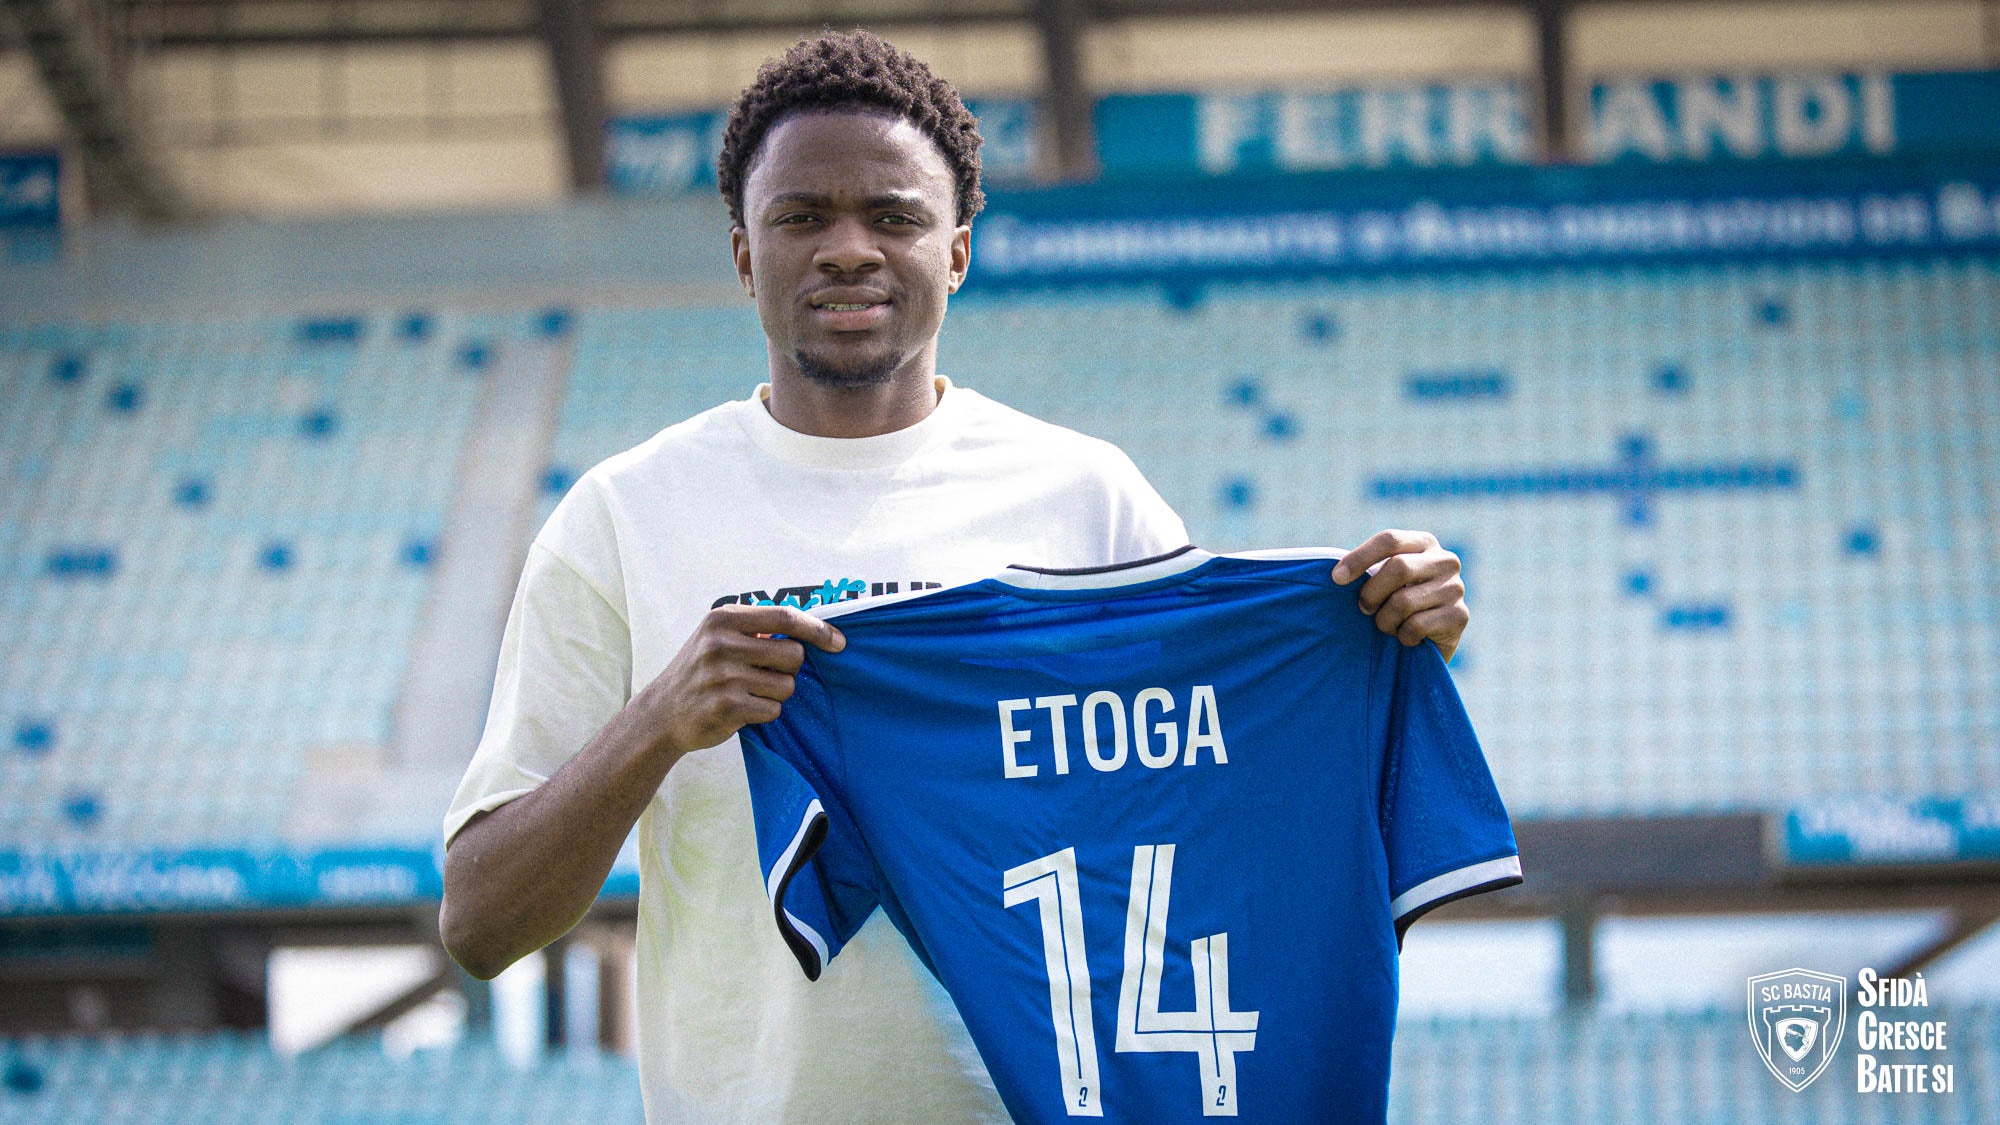 Loïc Etoga rejoint le Sporting !